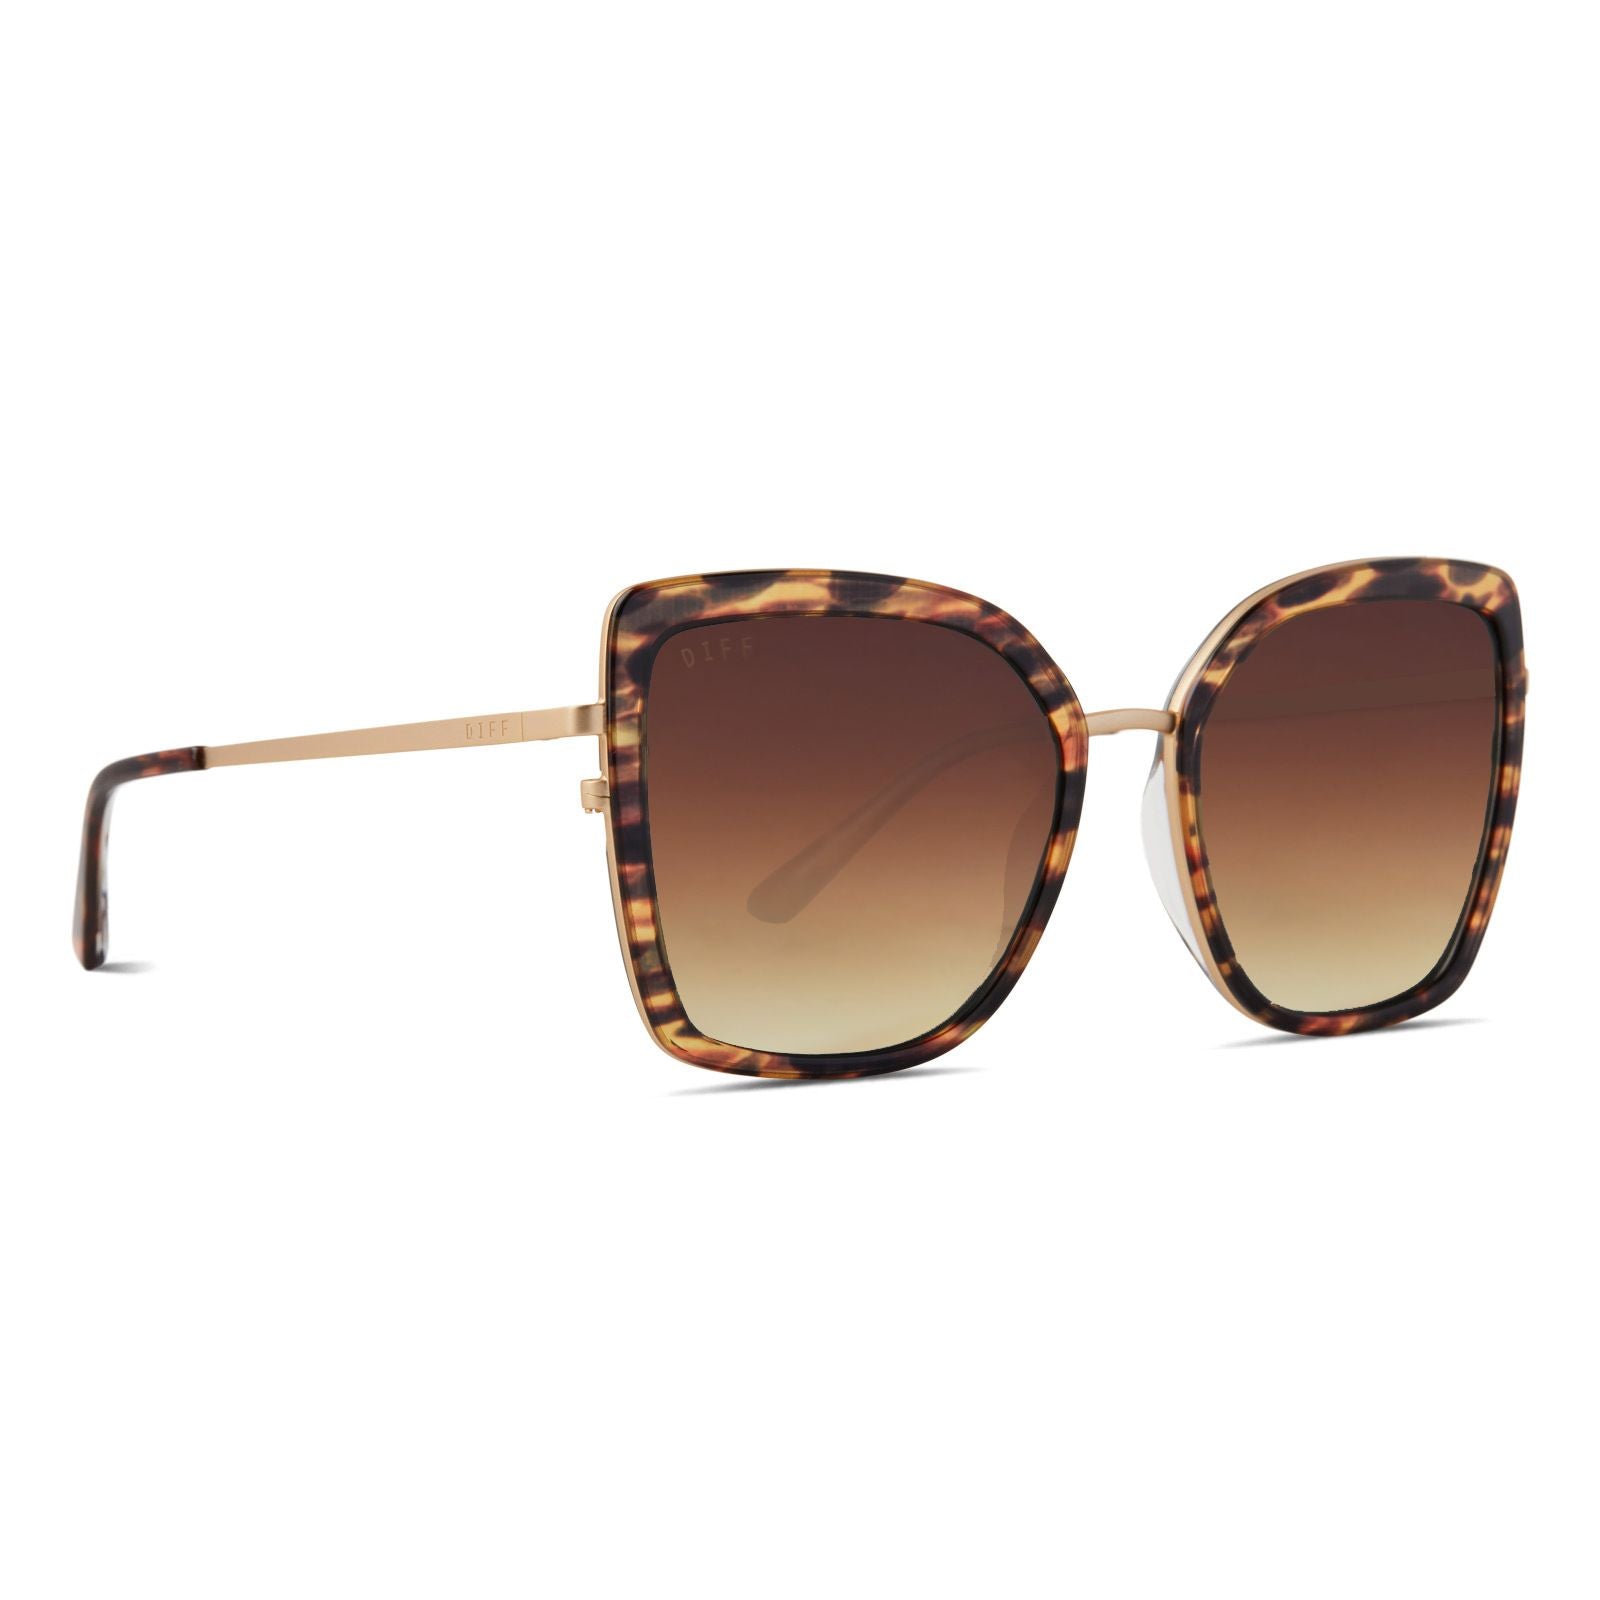 DIFF | Clarisse - Wild Tort + Brown Gradient Sunglasses